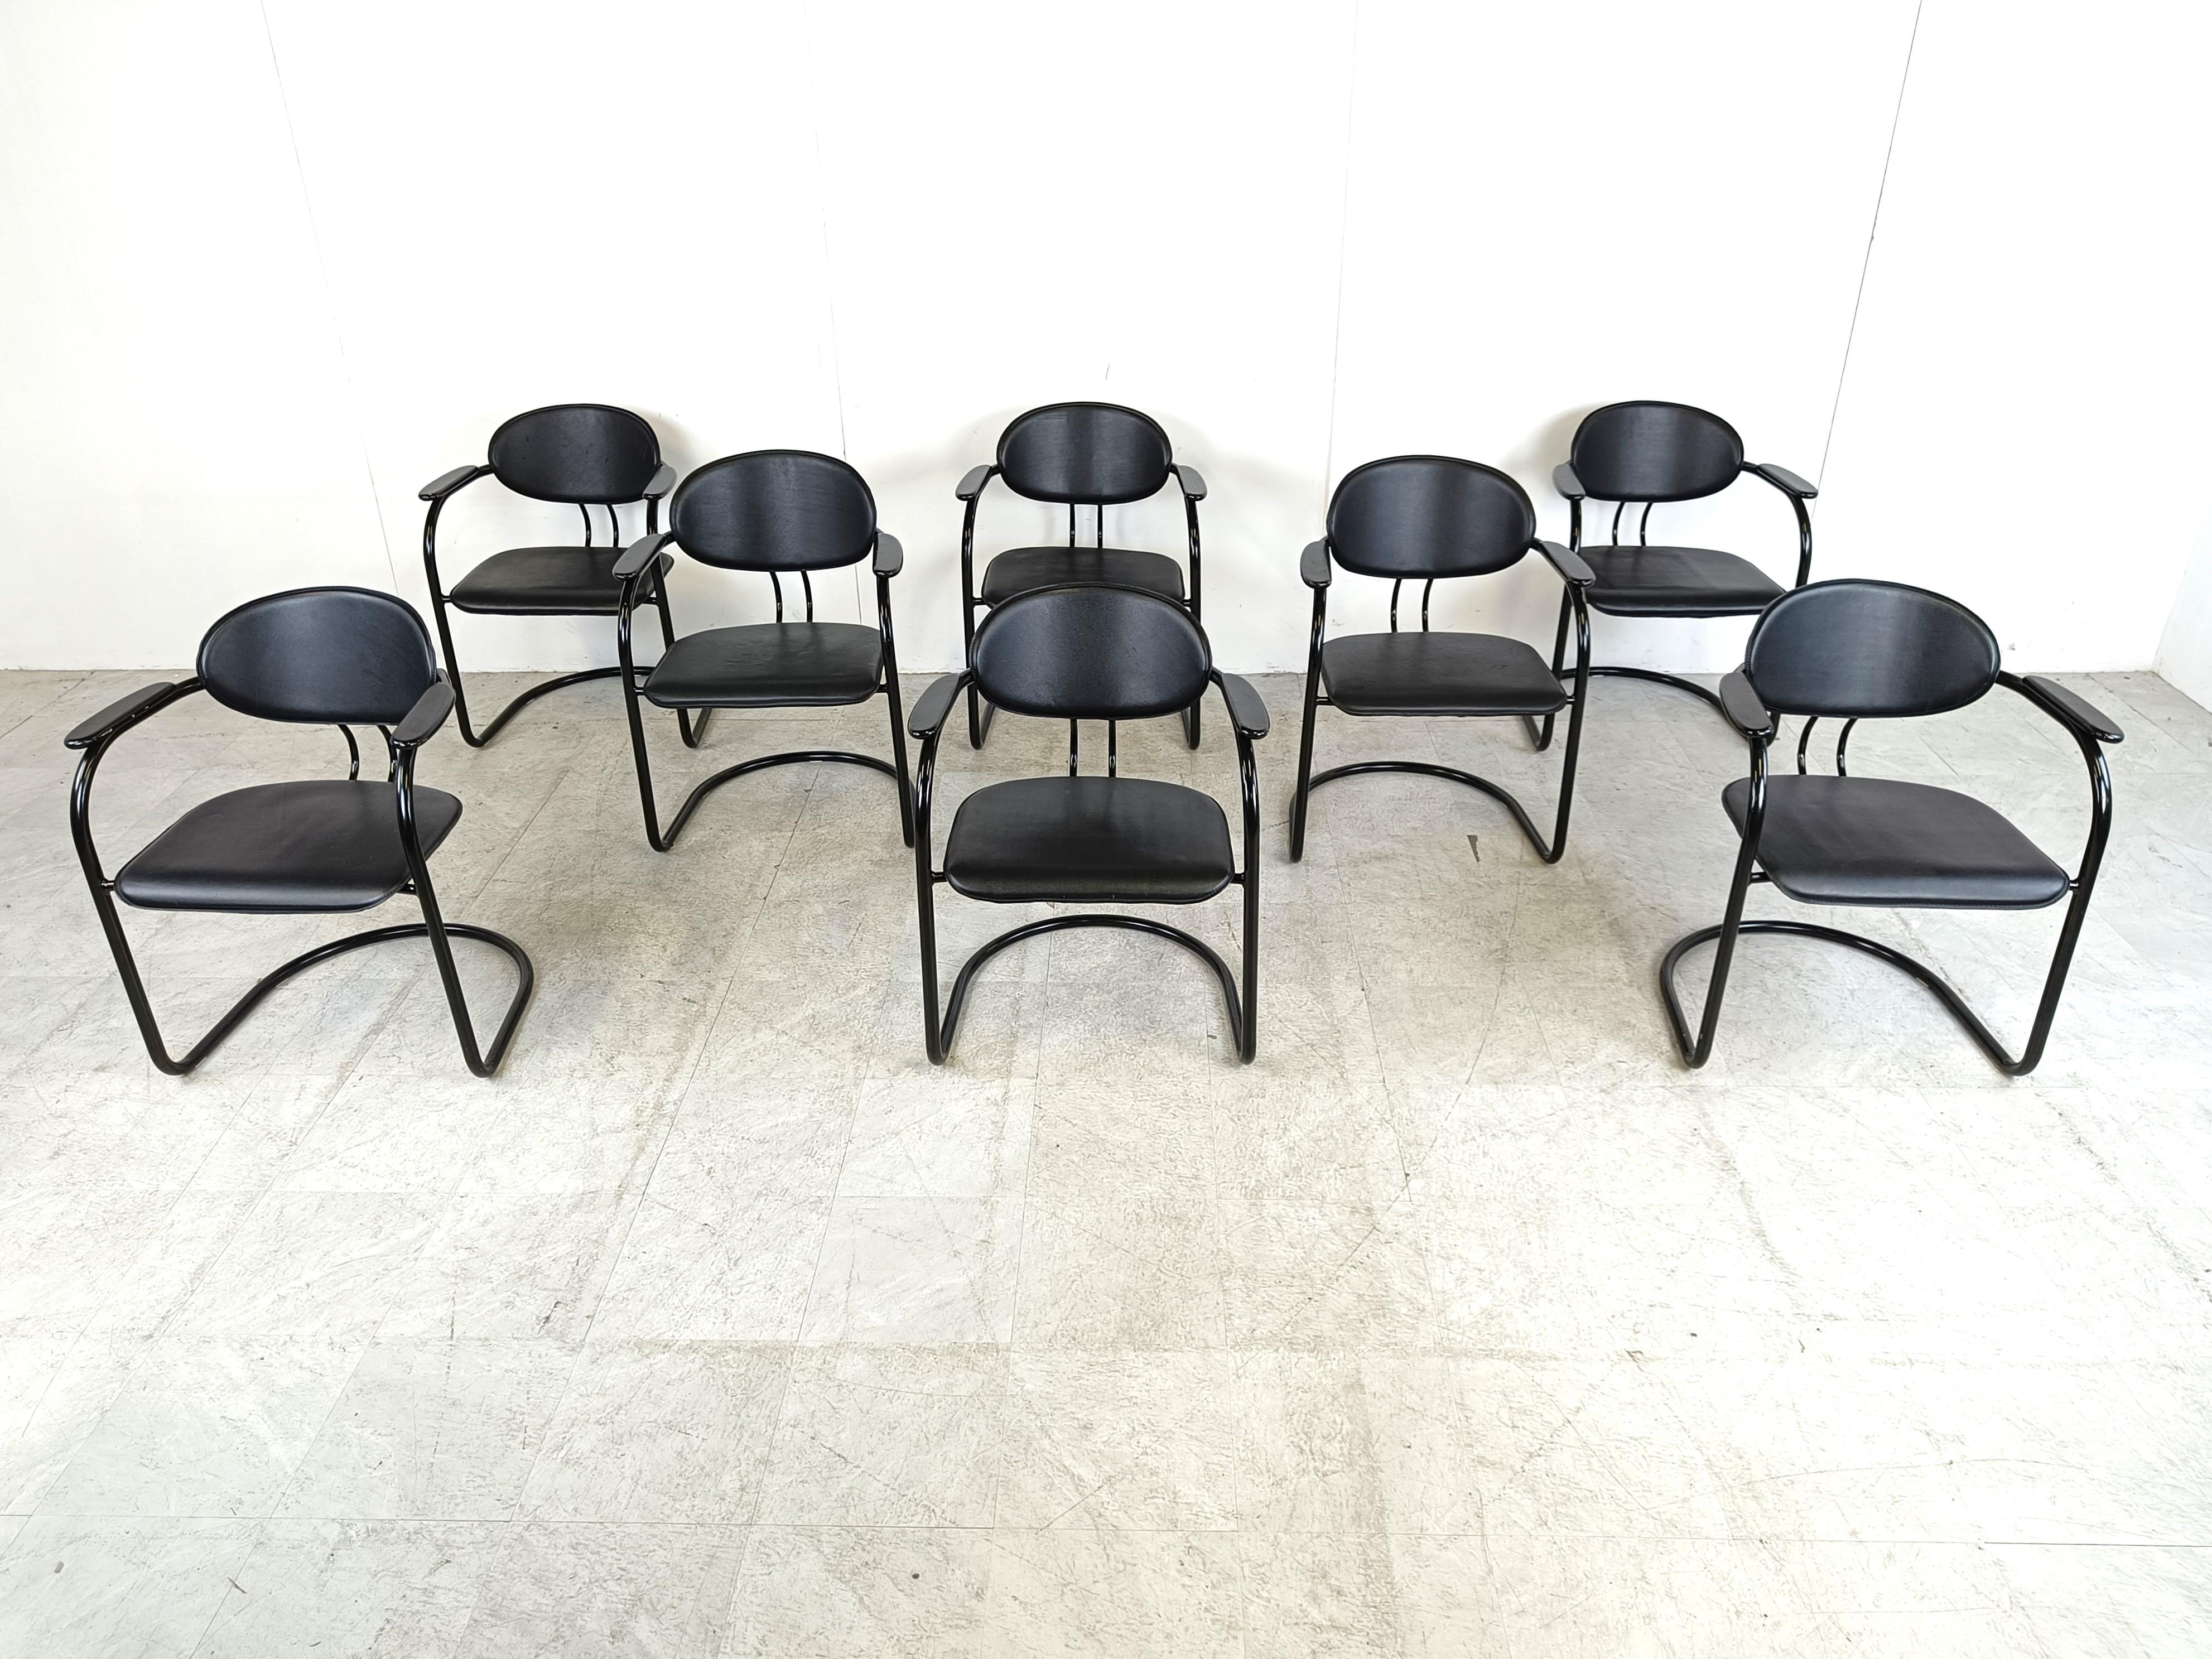 Chaises de salle à manger vintage à piétement luge fabriquées en Italie. Ils sont dotés d'un cadre en métal noir finement conçu, d'une assise et d'un dossier en cuir noir et d'accoudoirs en bois laqué.

Design/One élégant et intemporel.

Années 1980